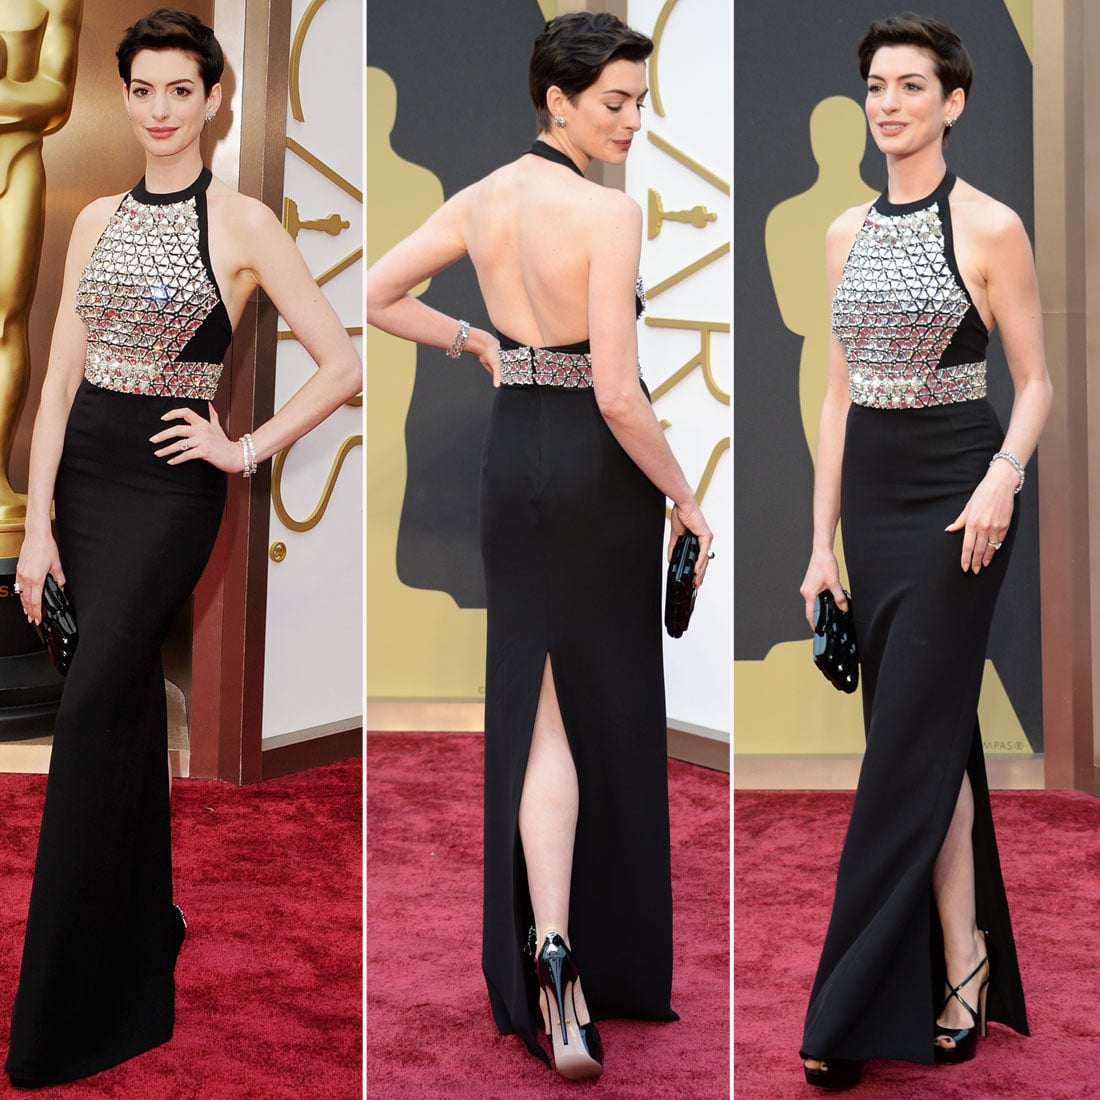 Anne Hathaway Gucci Dress at Oscars 2014 | POPSUGAR Fashion